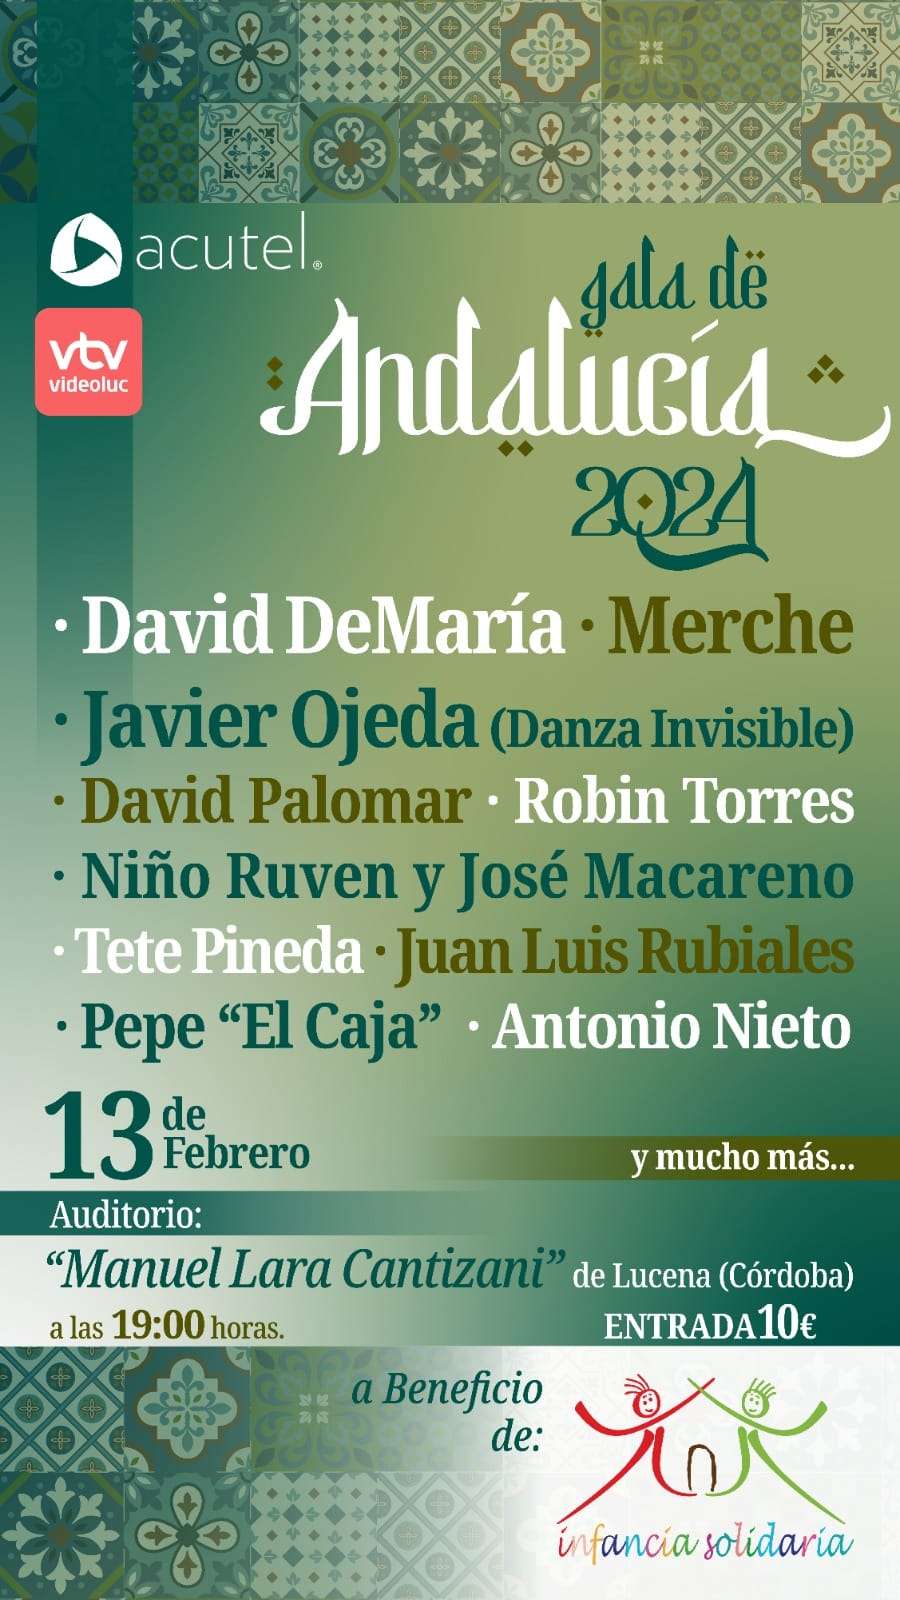 Gala de Andalucía 2024